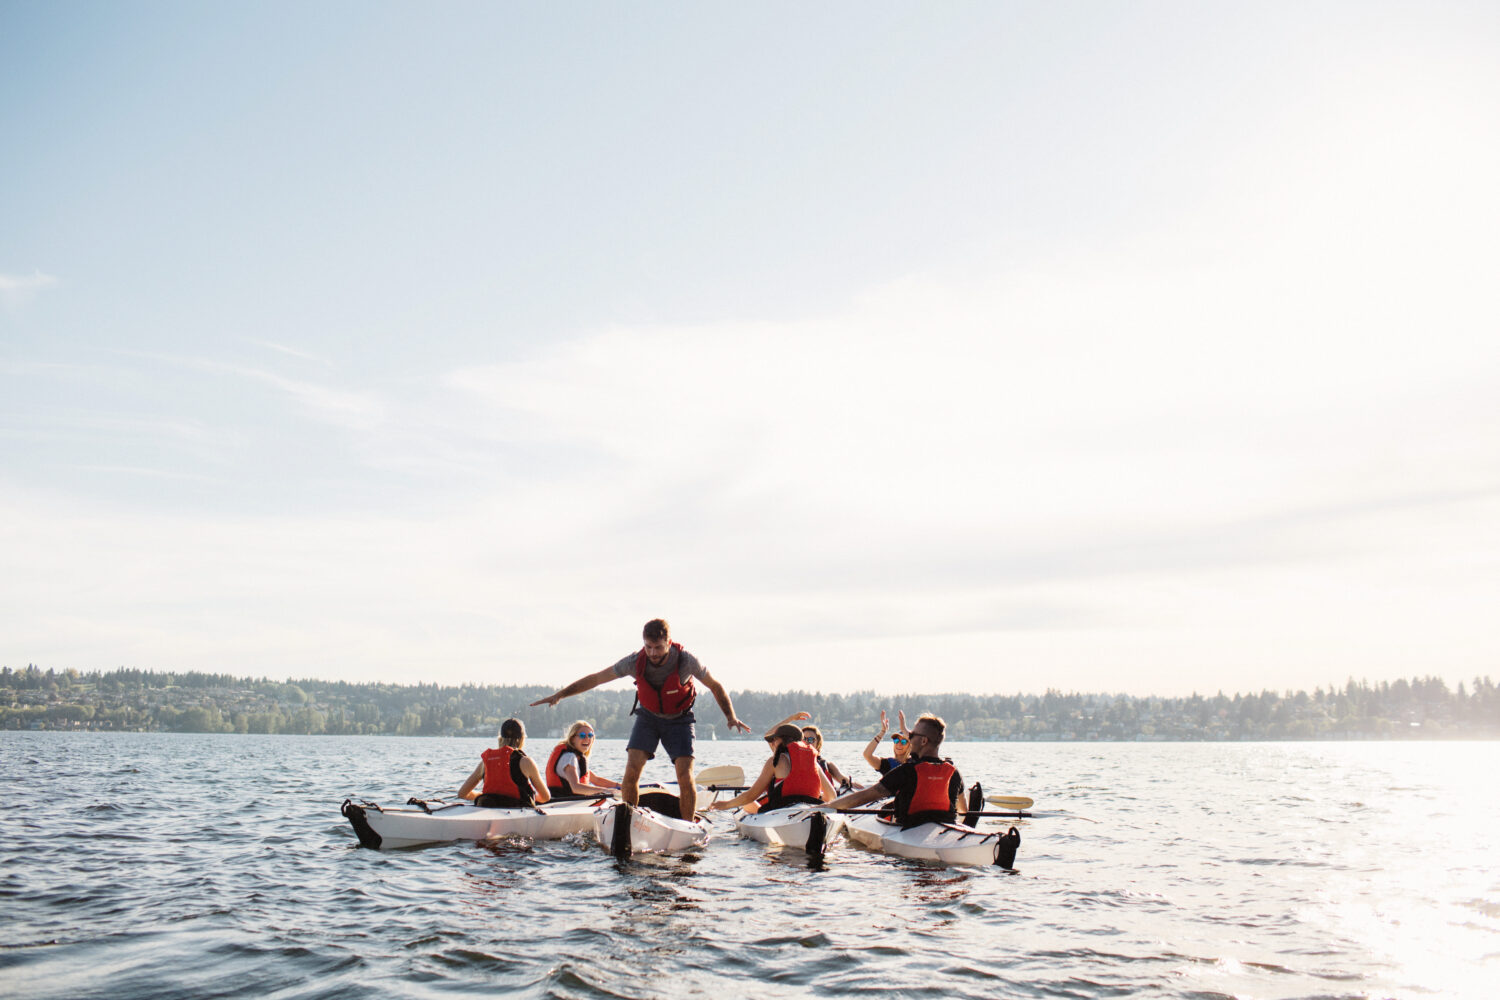 Bild zeigt eine Gruppe von jungen Leuten mit unterschiedlichen Oru Kayaks auf dem Wasser